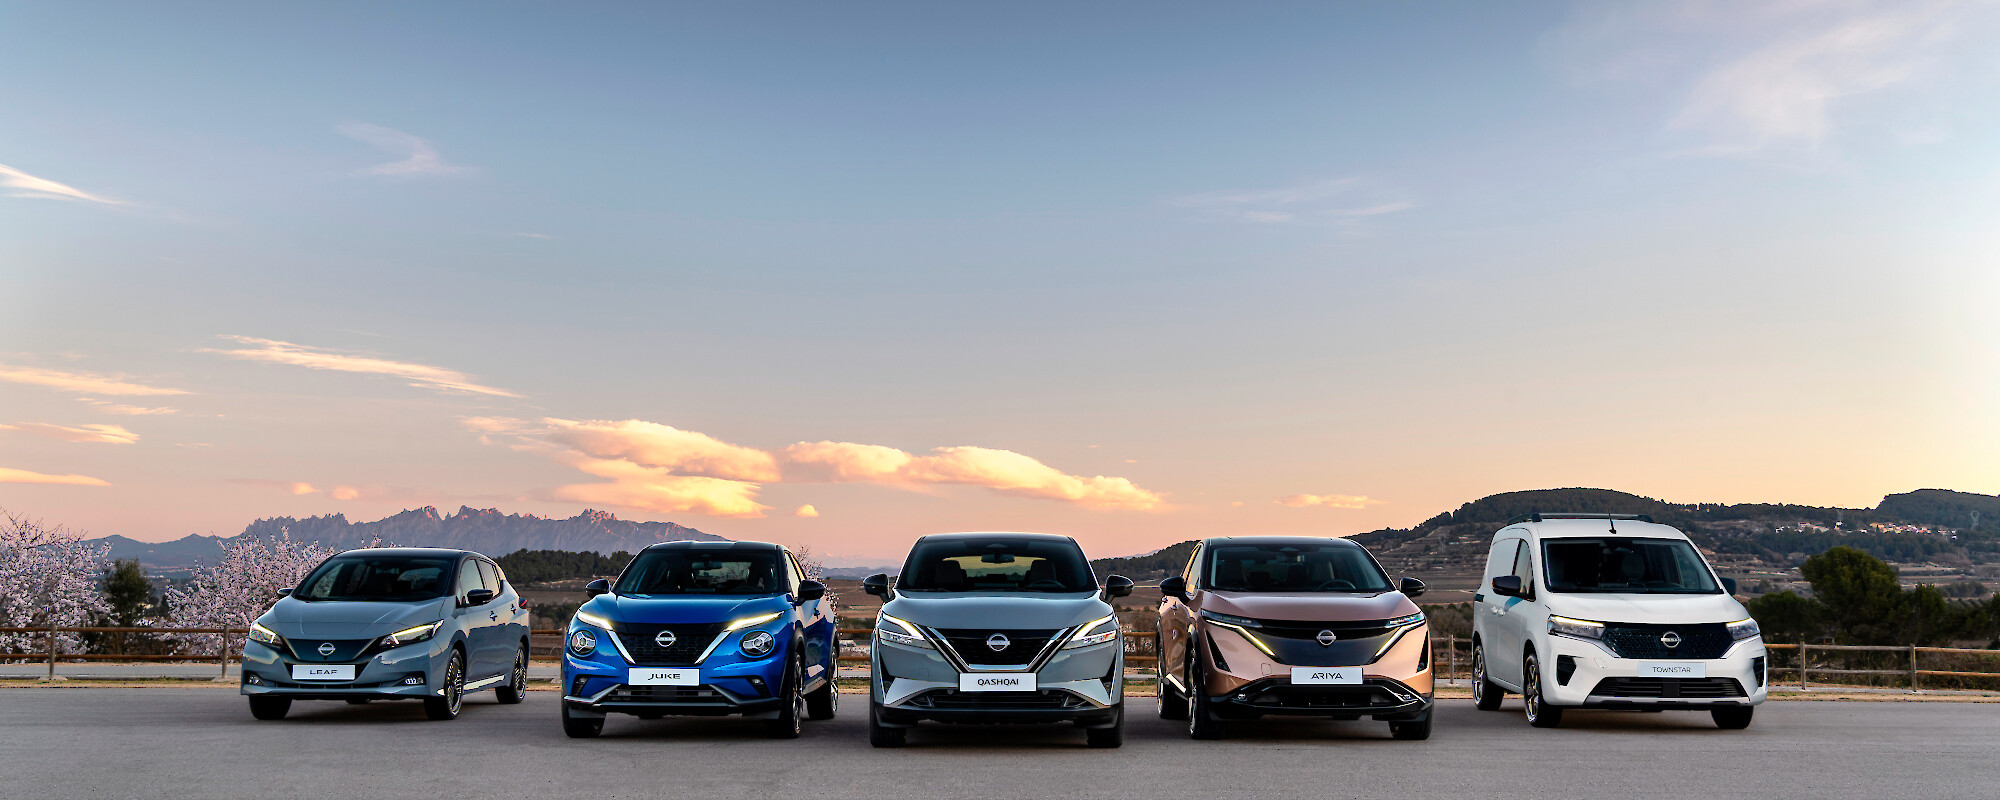 Nissan modellek állnak egy parkolóban